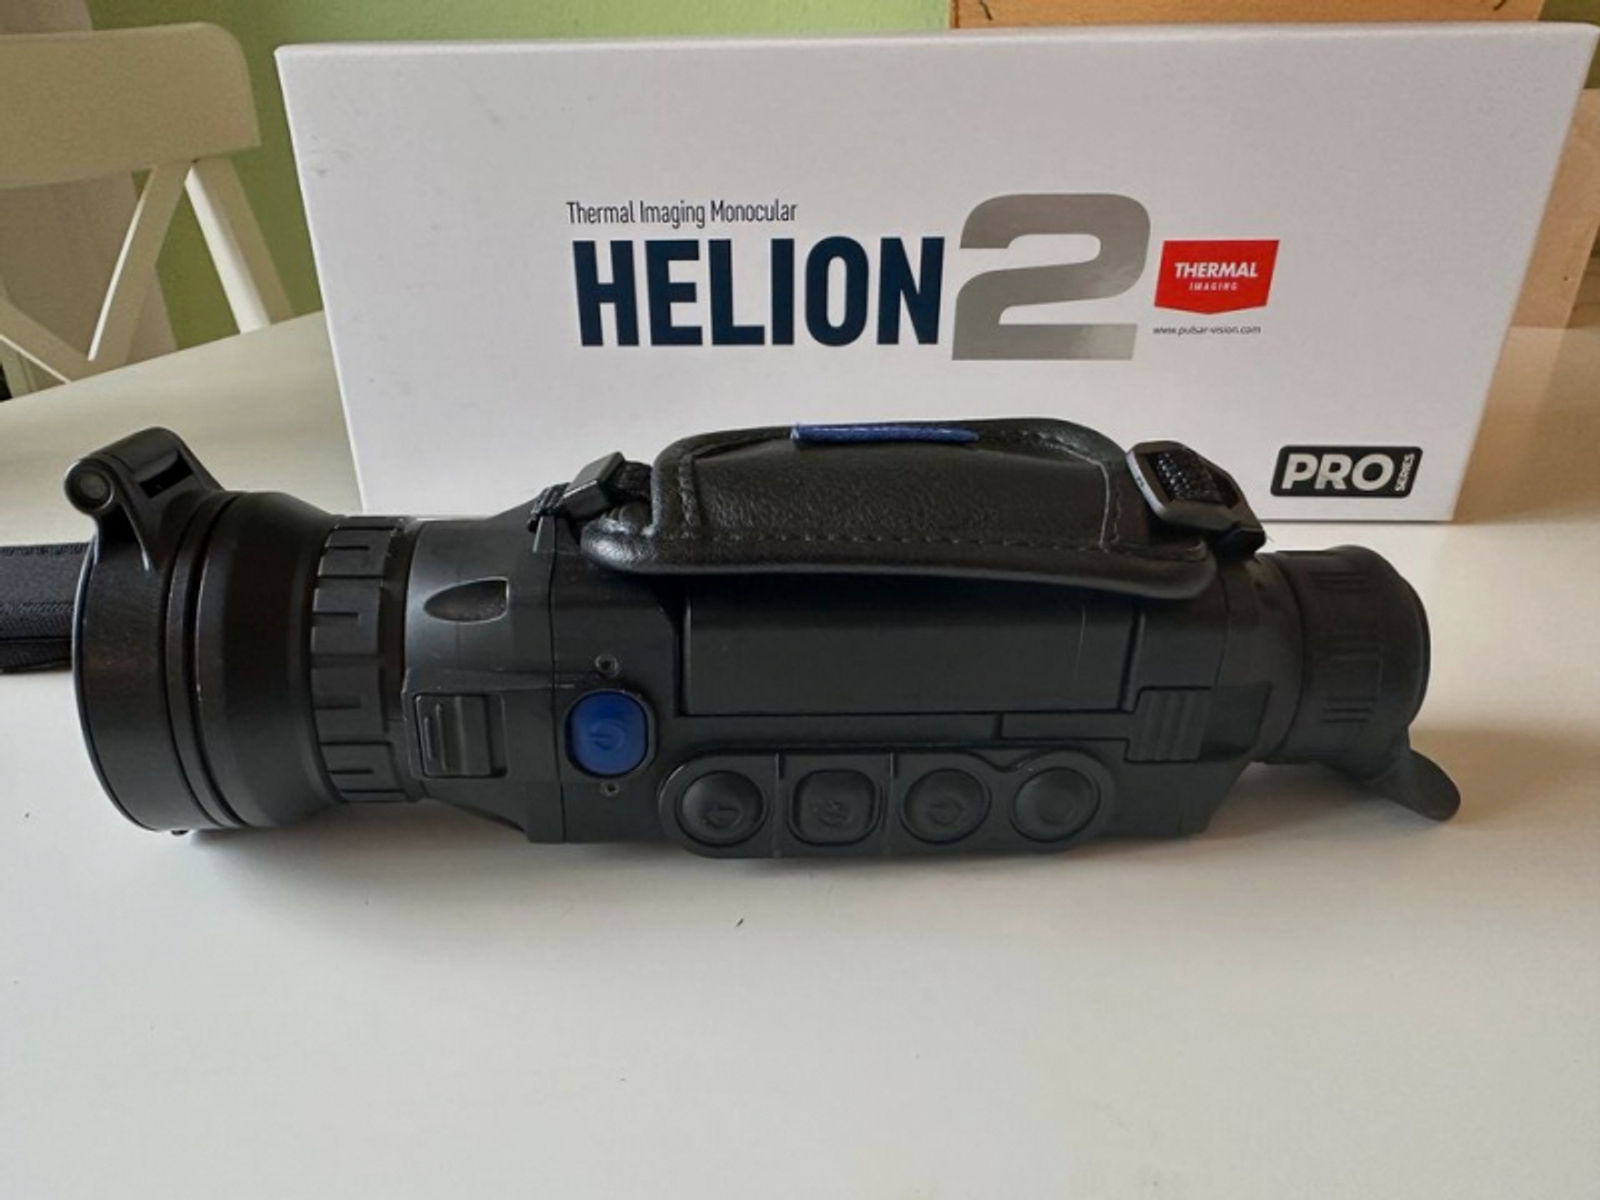 Wärmebildkamera Pulsar Helion 2 XP50 Pro